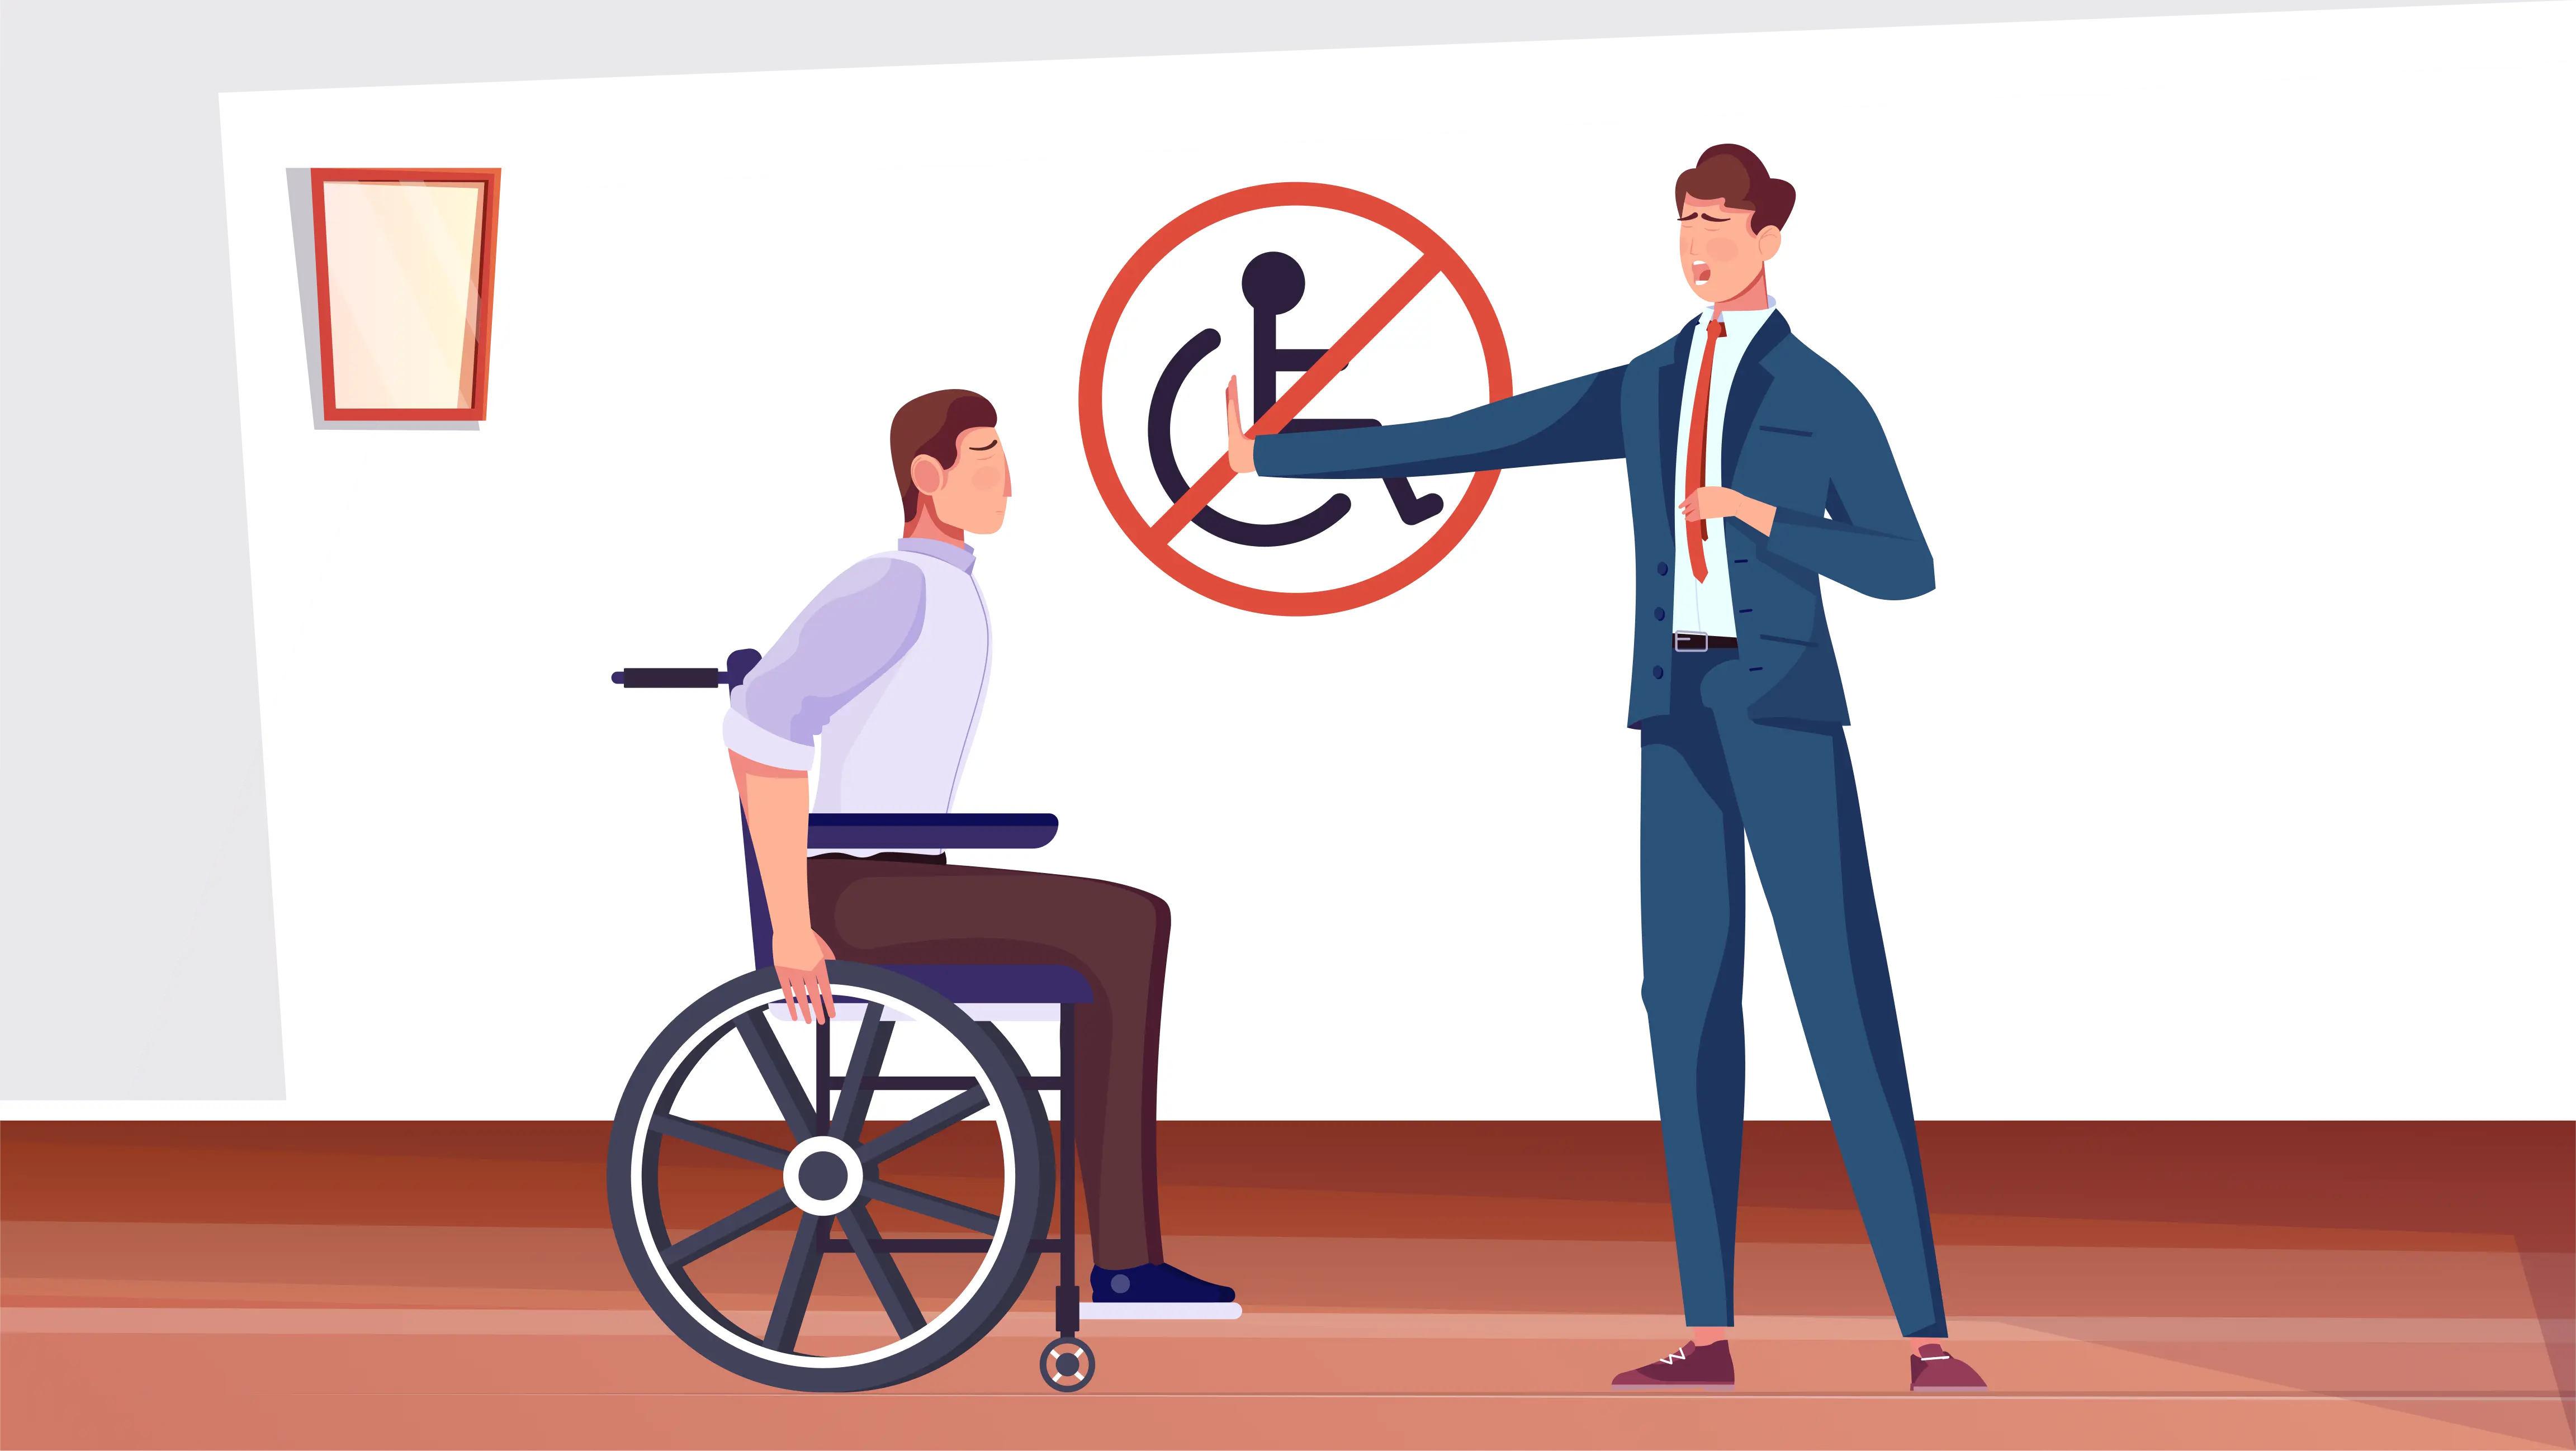 illustration de deux personnes : une debout qui empêche d'avancer la deuxièmre en fauteuil roulant. Sur le mur derrière, il y a un panneau montrant un fauteuil roulant barré en rouge